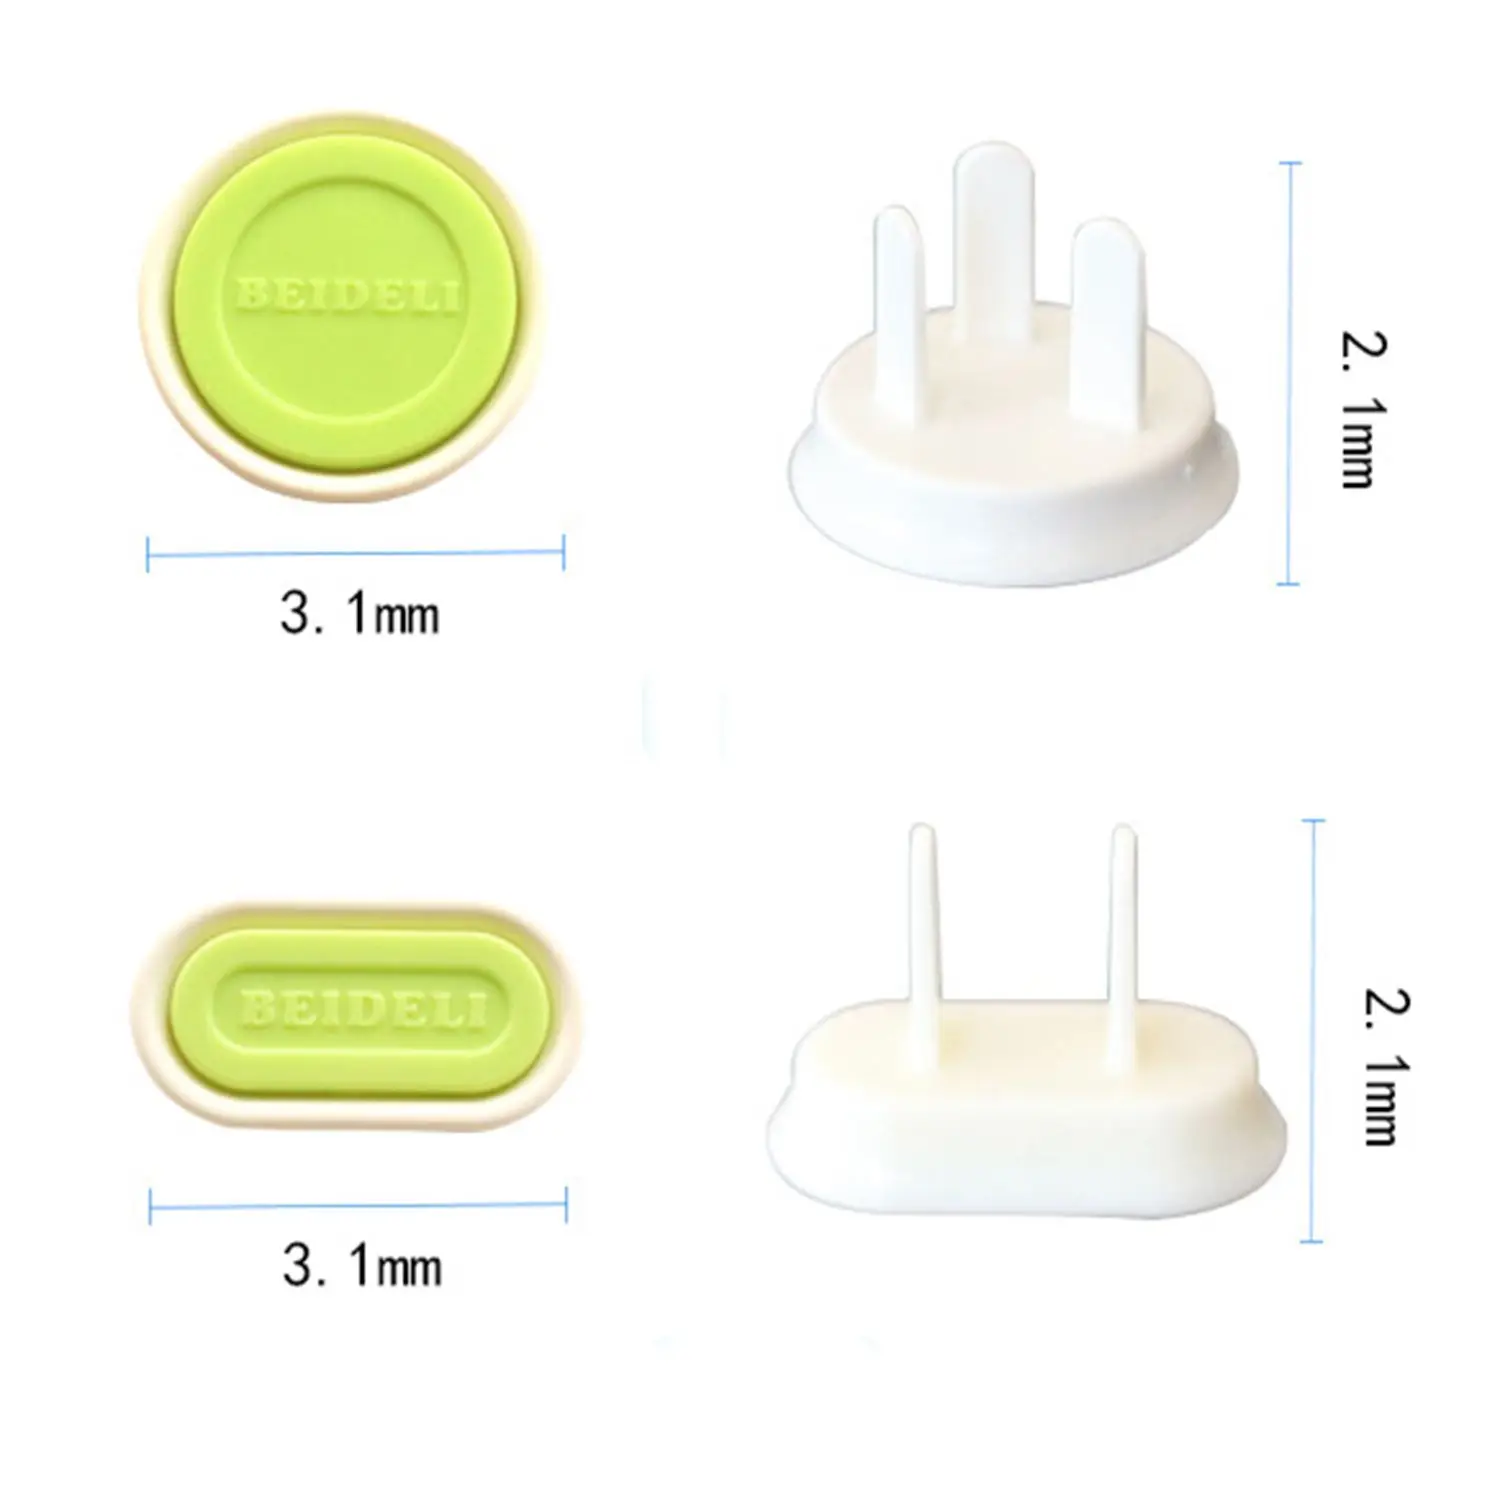 MALI-Plug Socket Safet детская Защитная вилка Защитная крышка пластиковая Безопасная электрическая розетка